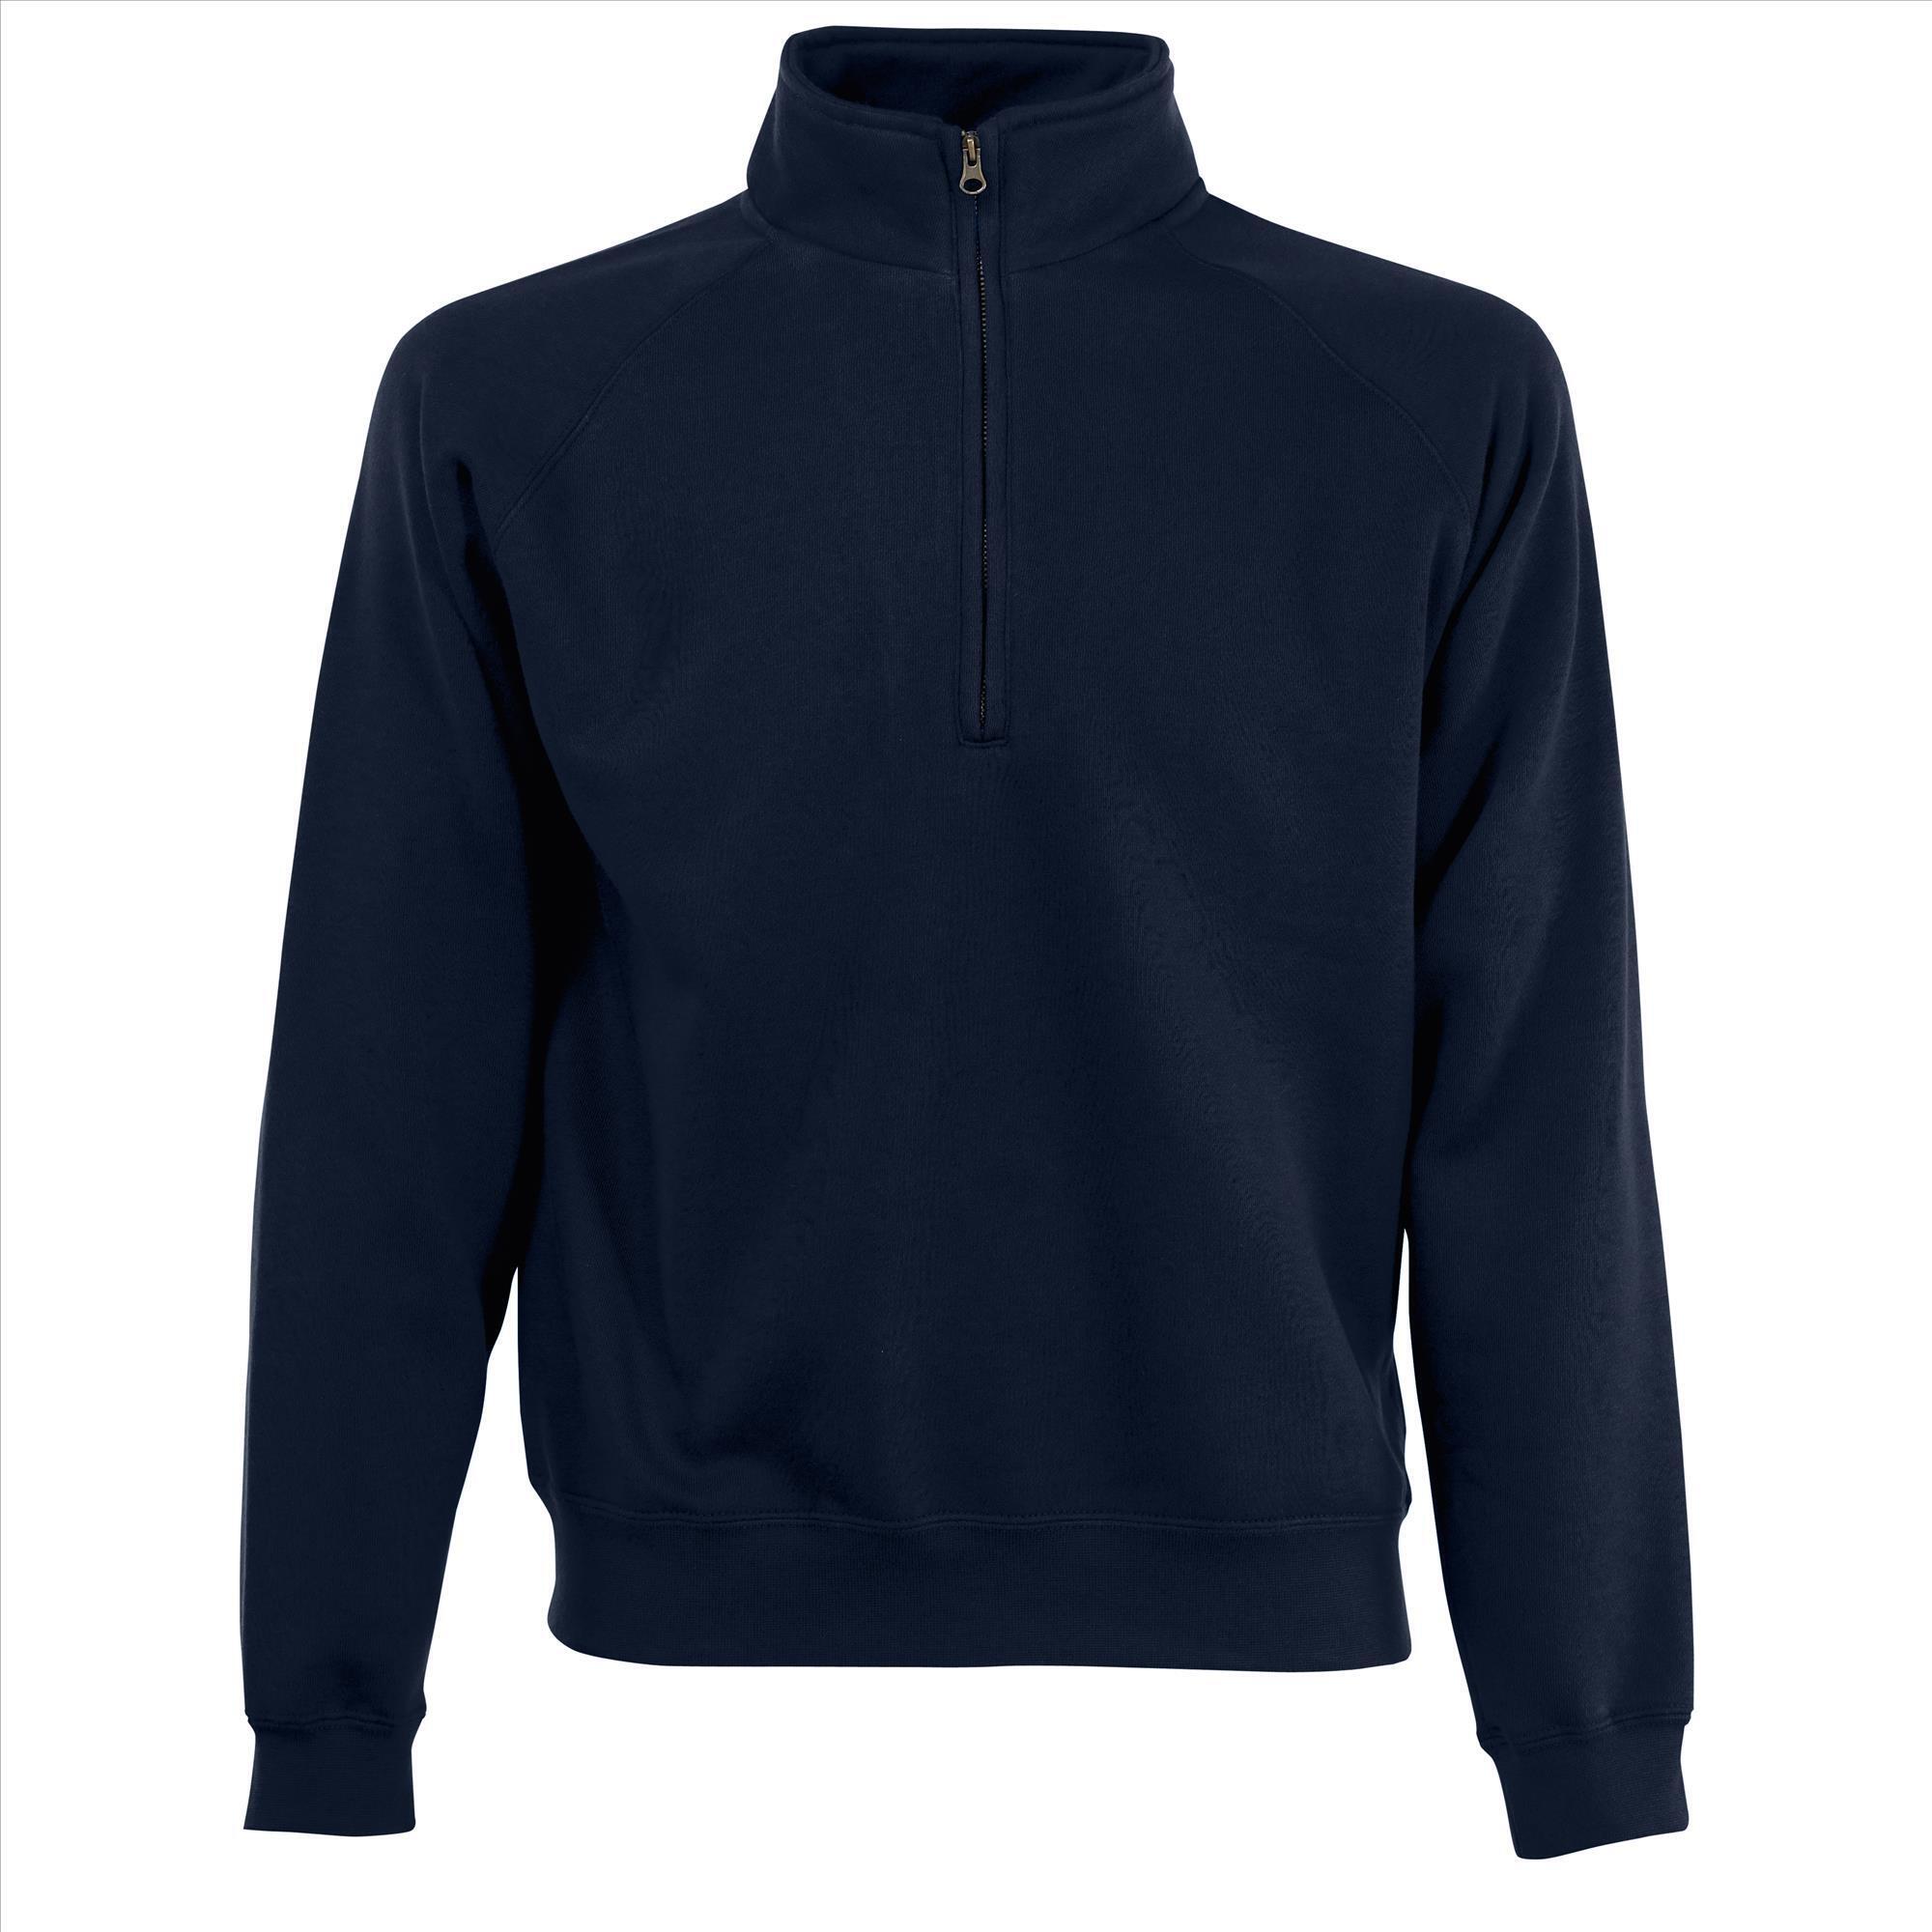 Sweater voor mannen diep Marine blauw zijn te bedrukken met eigen ontwerp logo tekst